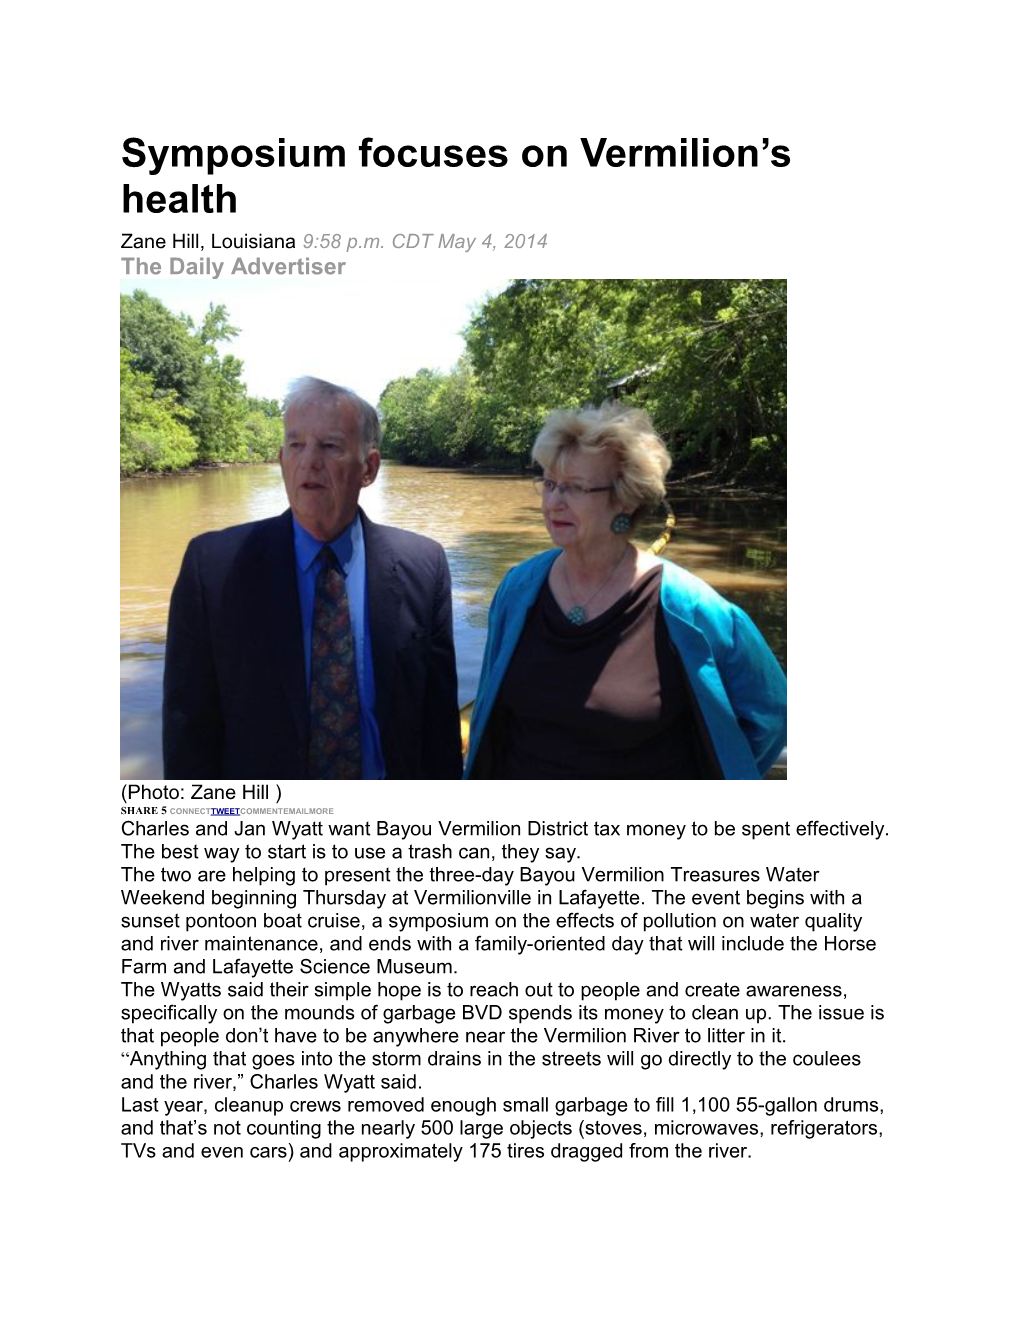 Symposium Focuses on Vermilion S Health